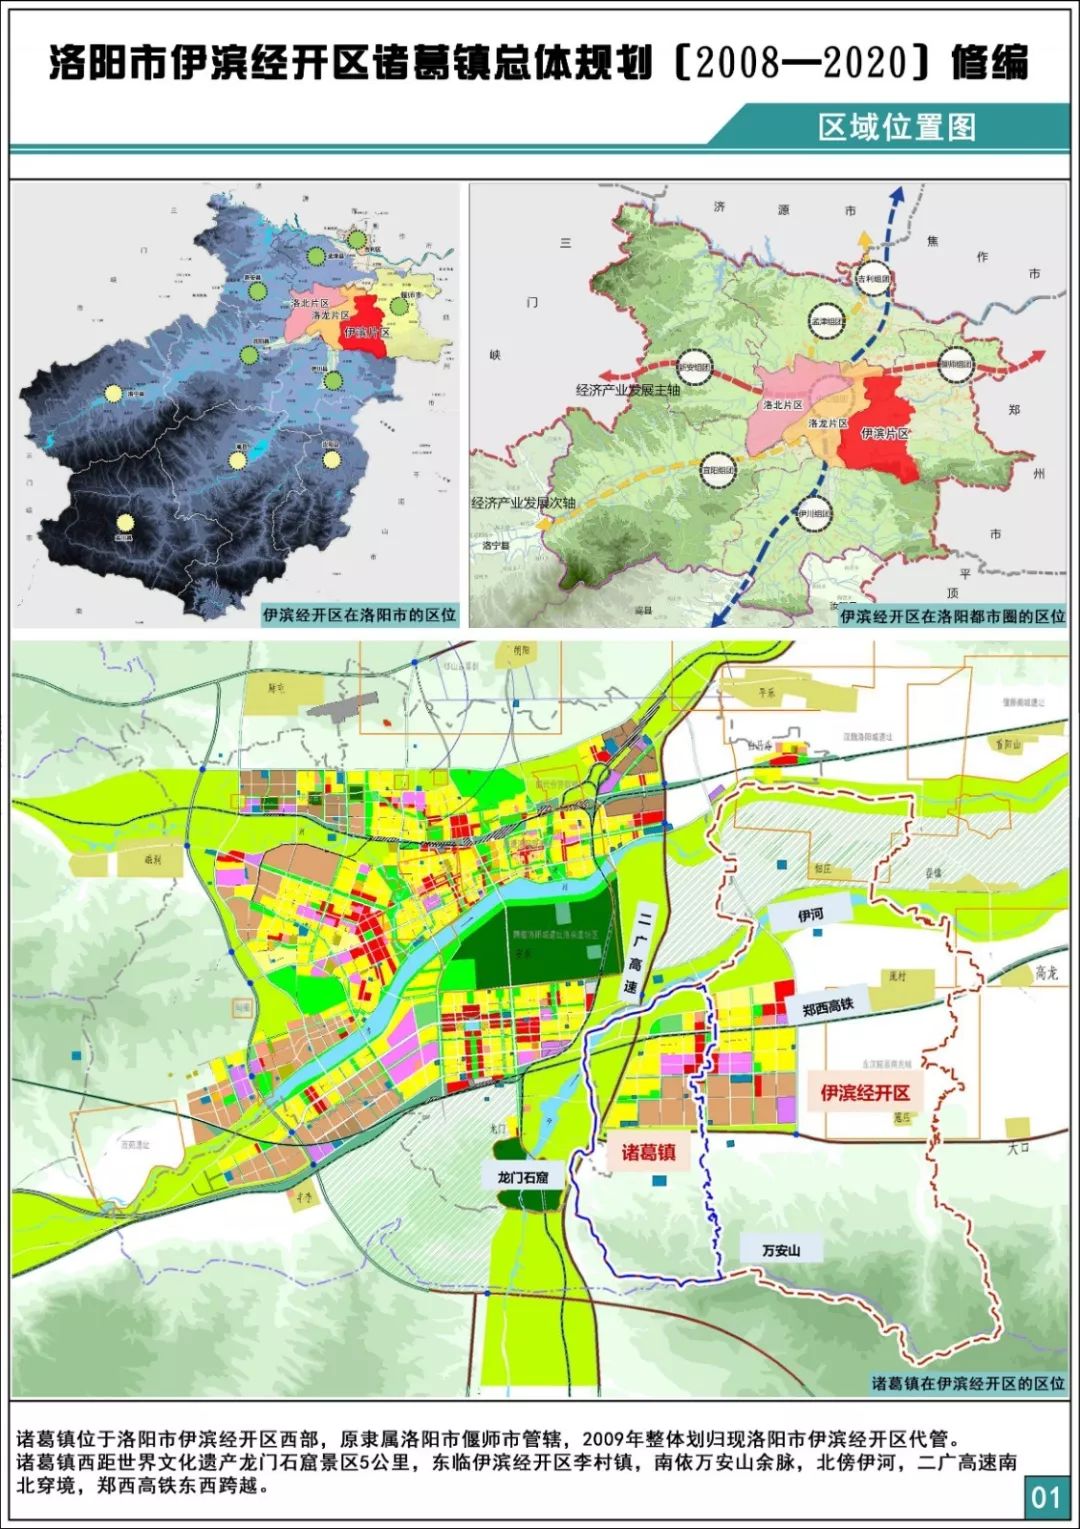 洛阳市伊滨经开区诸葛镇总体规划(2008—2020)修编公示